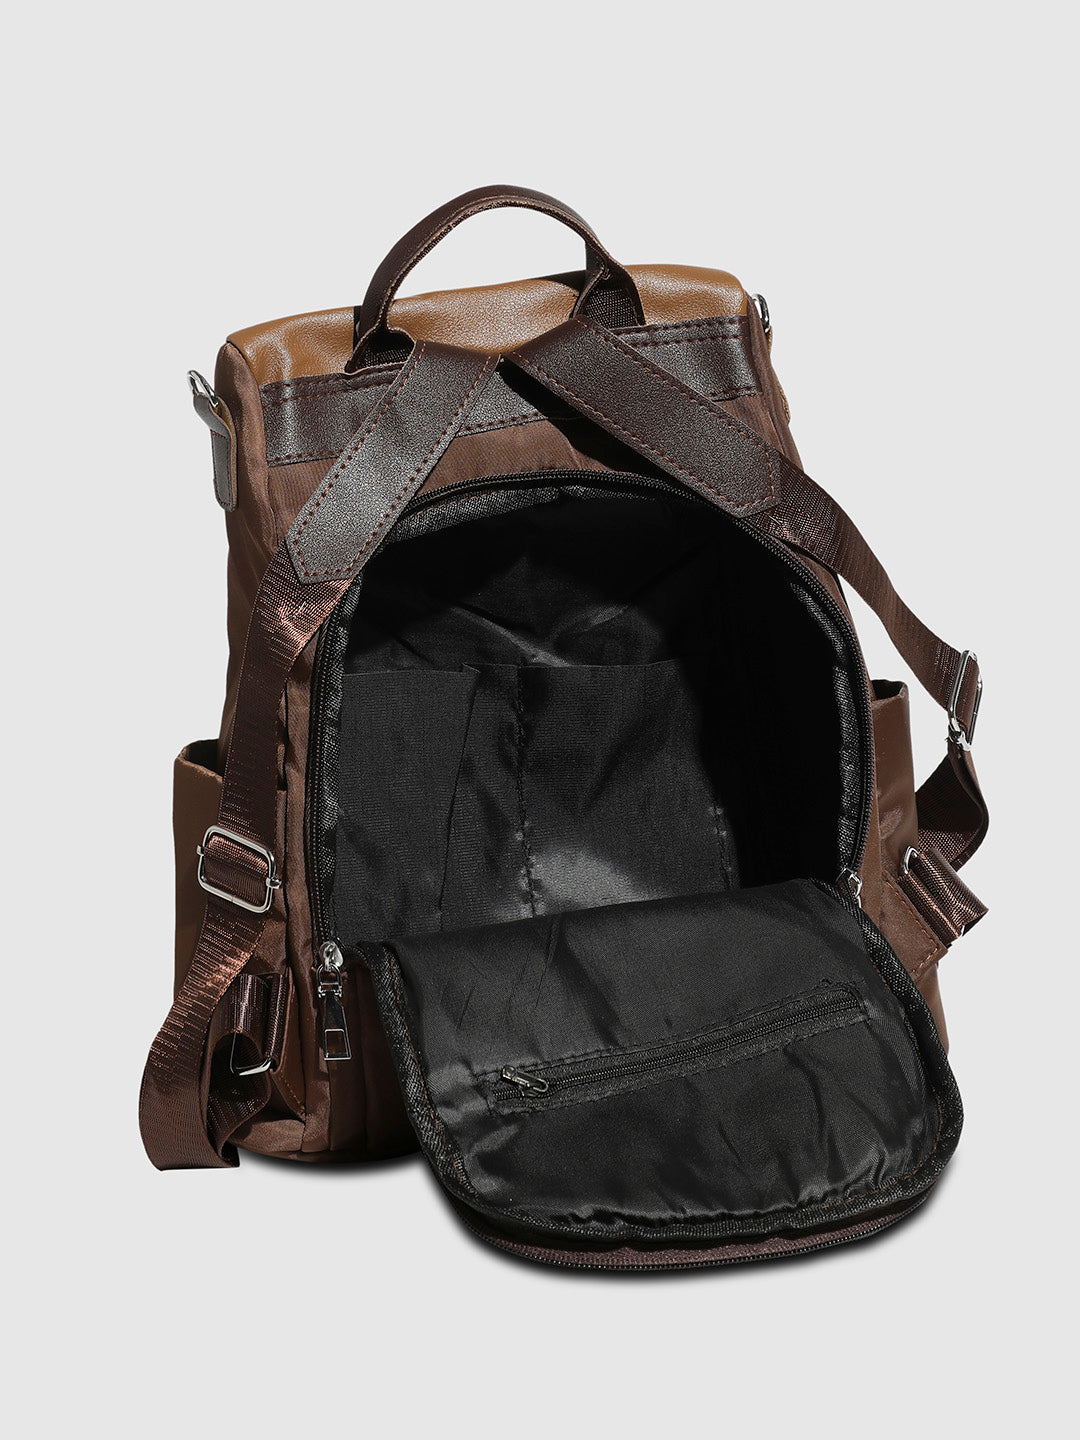 Contrast Tassel Backpack - Brown